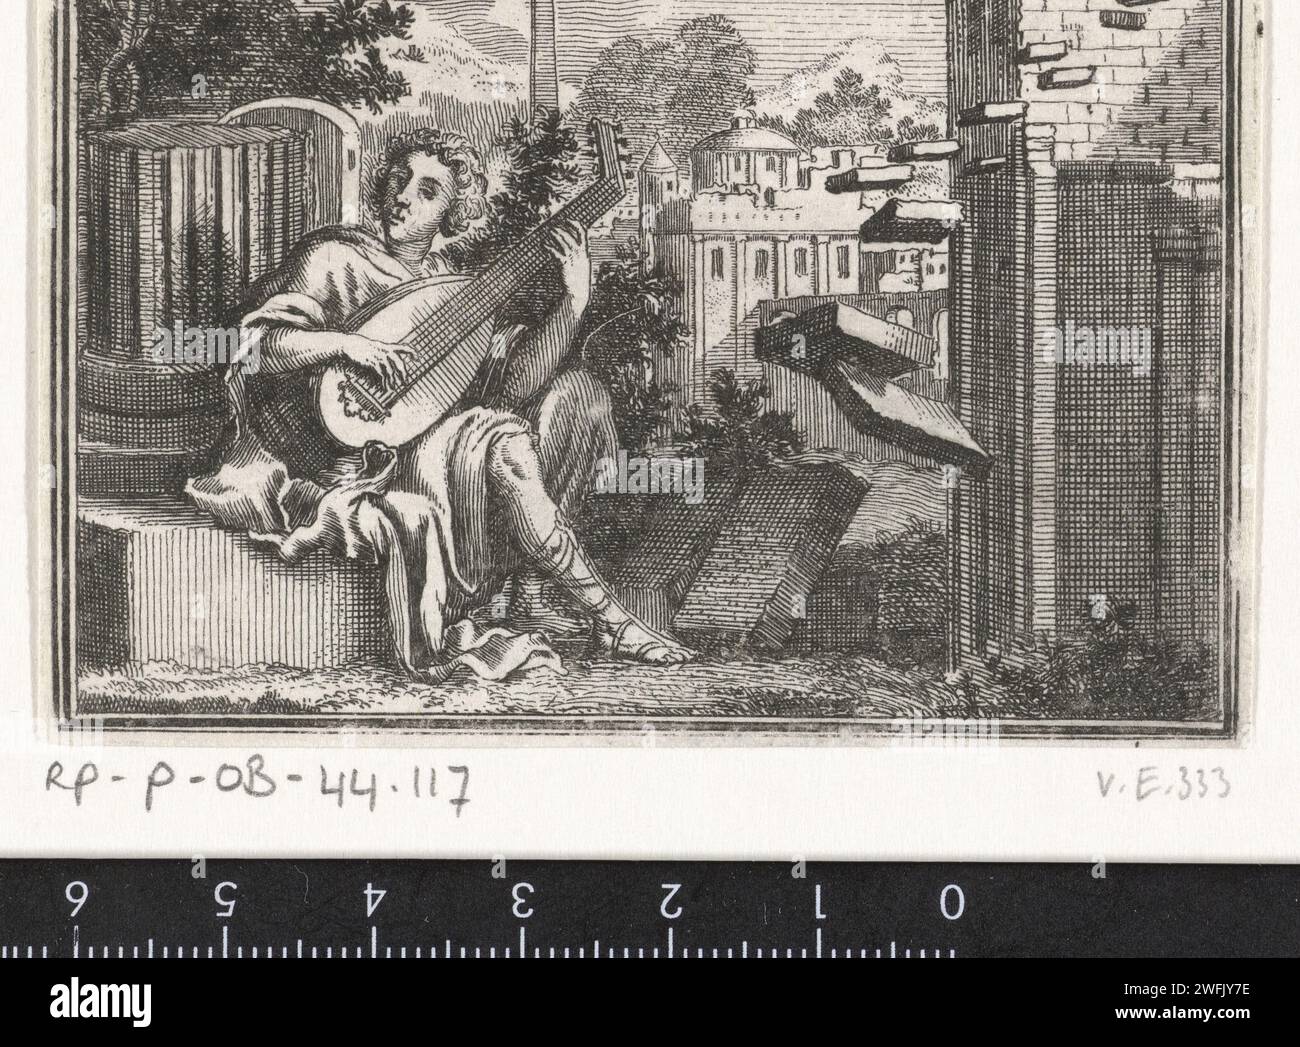 Amphion, jouant sur un luth près des murs de Thèbes, Jan Luyken, d'après François Chauueau, 1681 estampe Amsterdam papier gravure (histoire de) Amphion et Zethus Banque D'Images